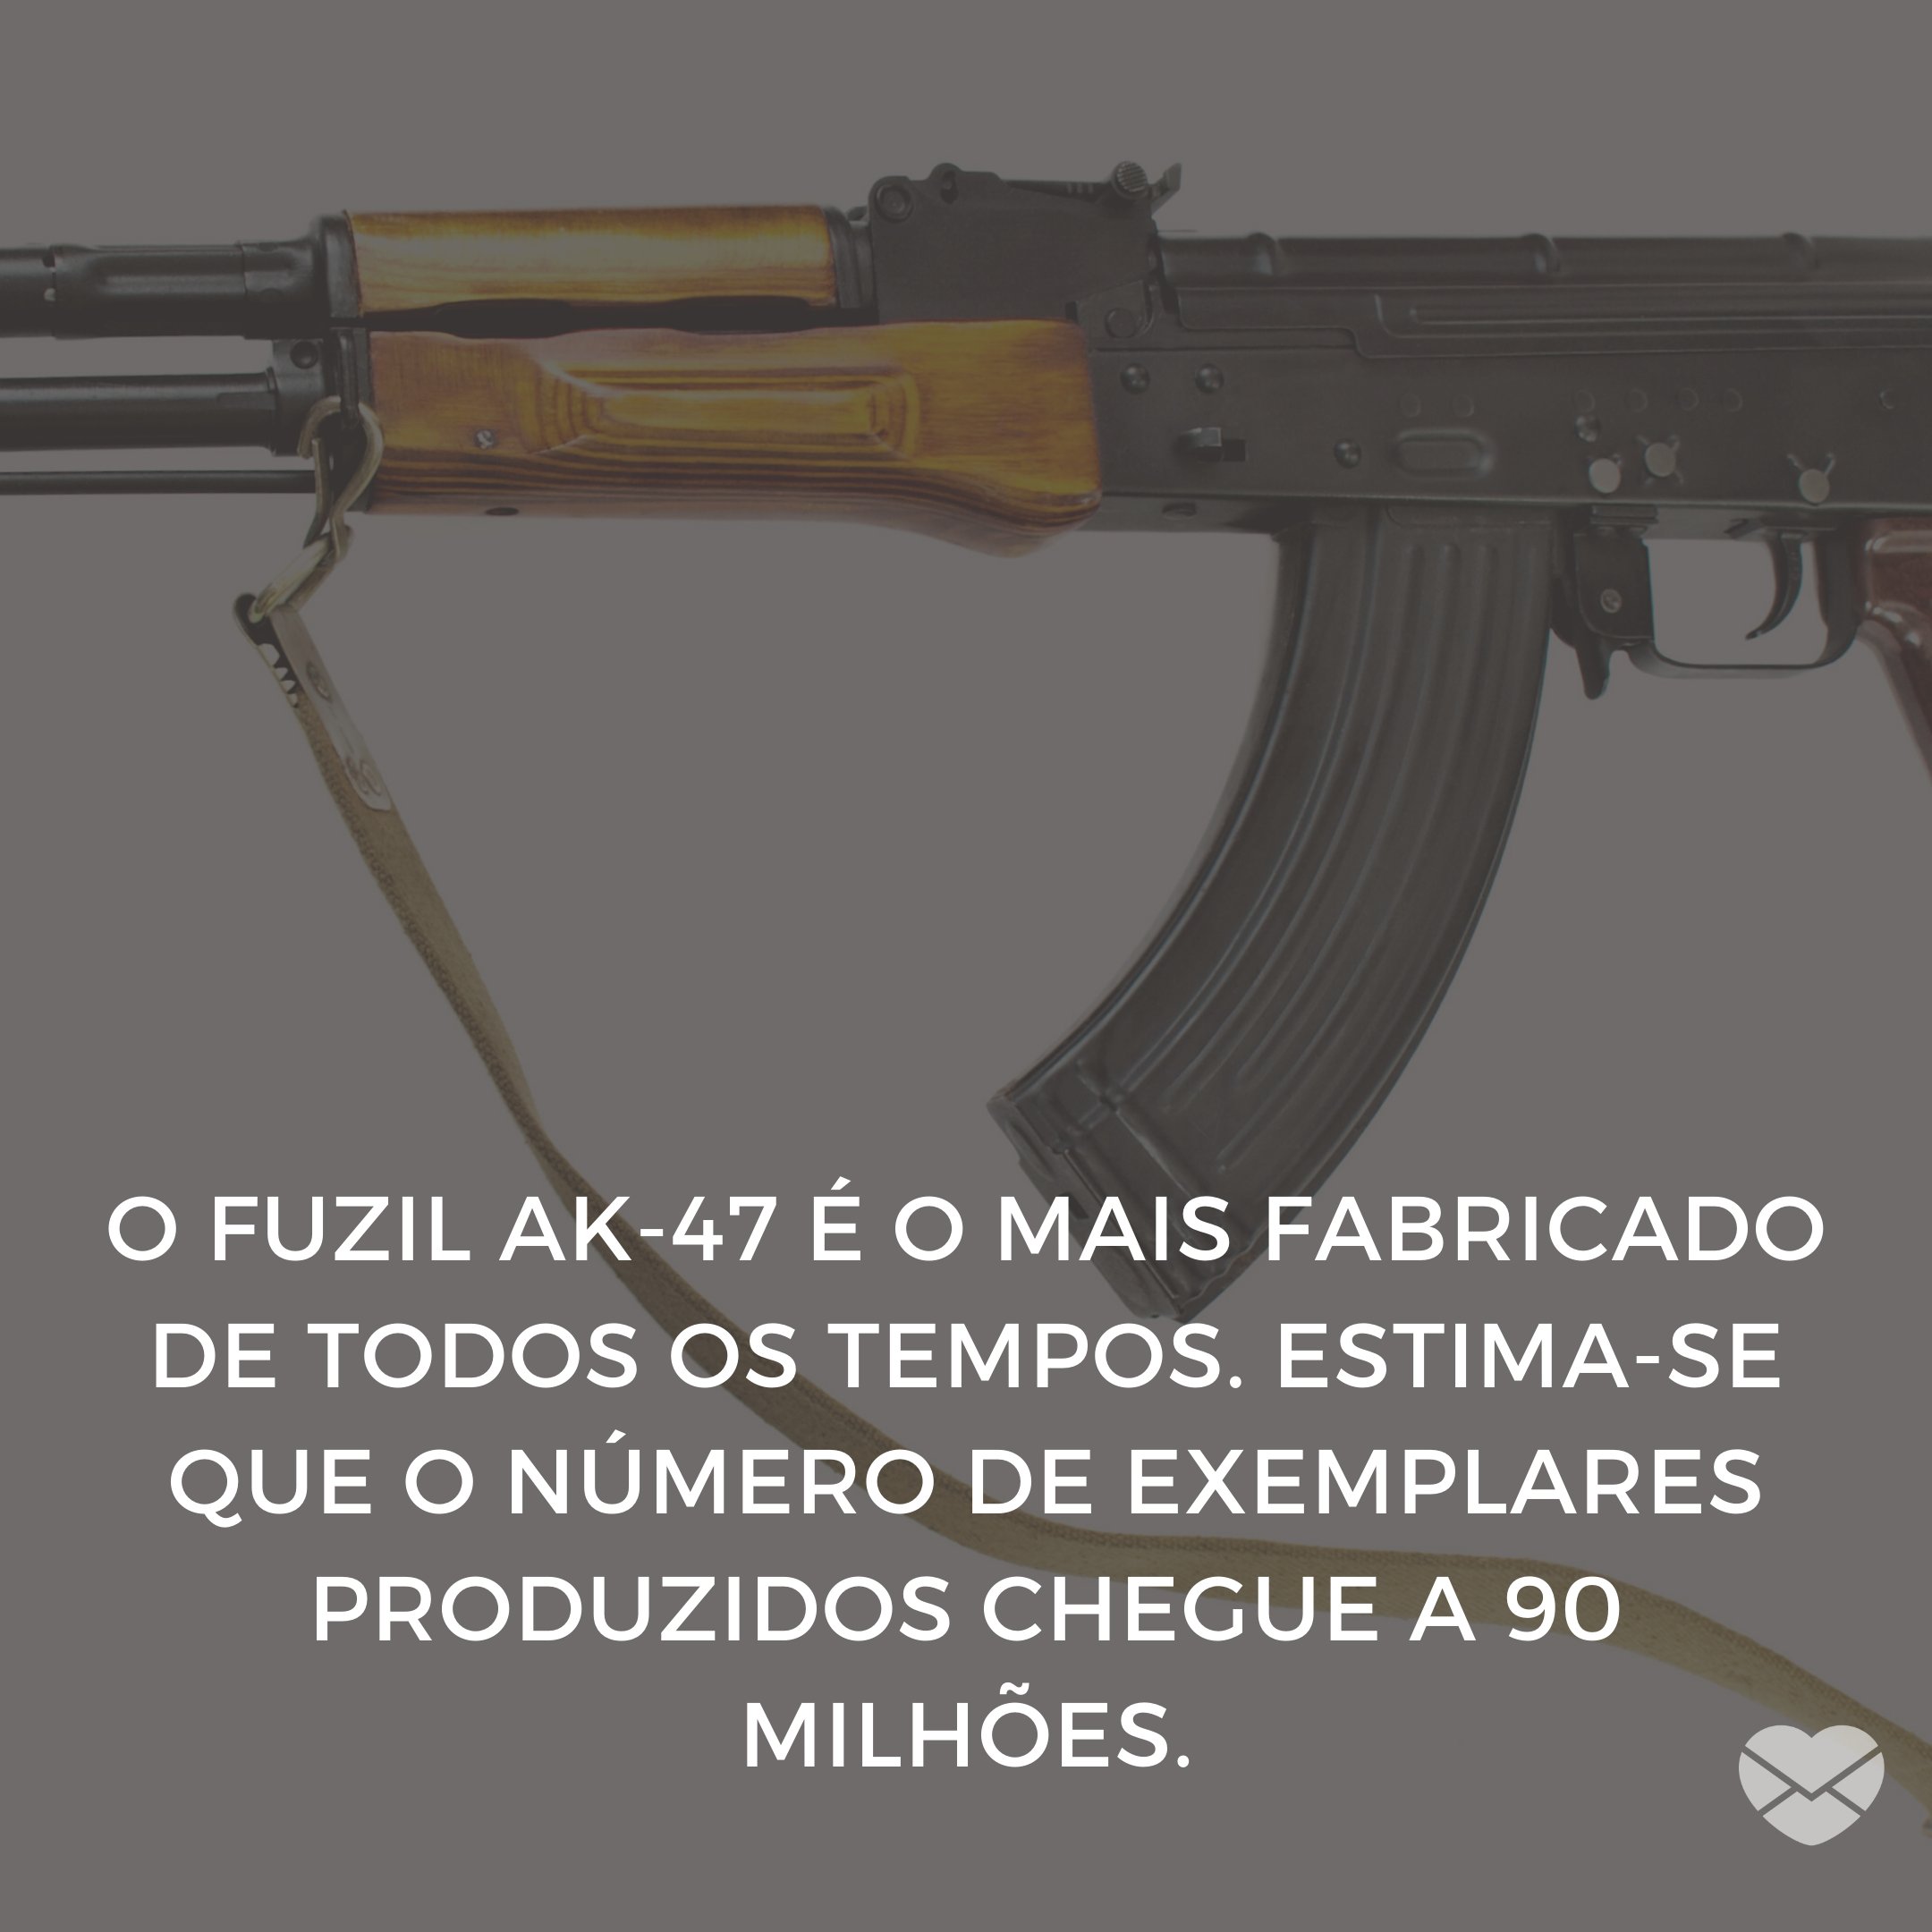 'O fuzil AK-47 é o mais fabricado de todos os tempos. Estima-se que o número de exemplares produzidos chegue a 90 milhões.' - 10 Curiosidades Que Você Nem Imaginava